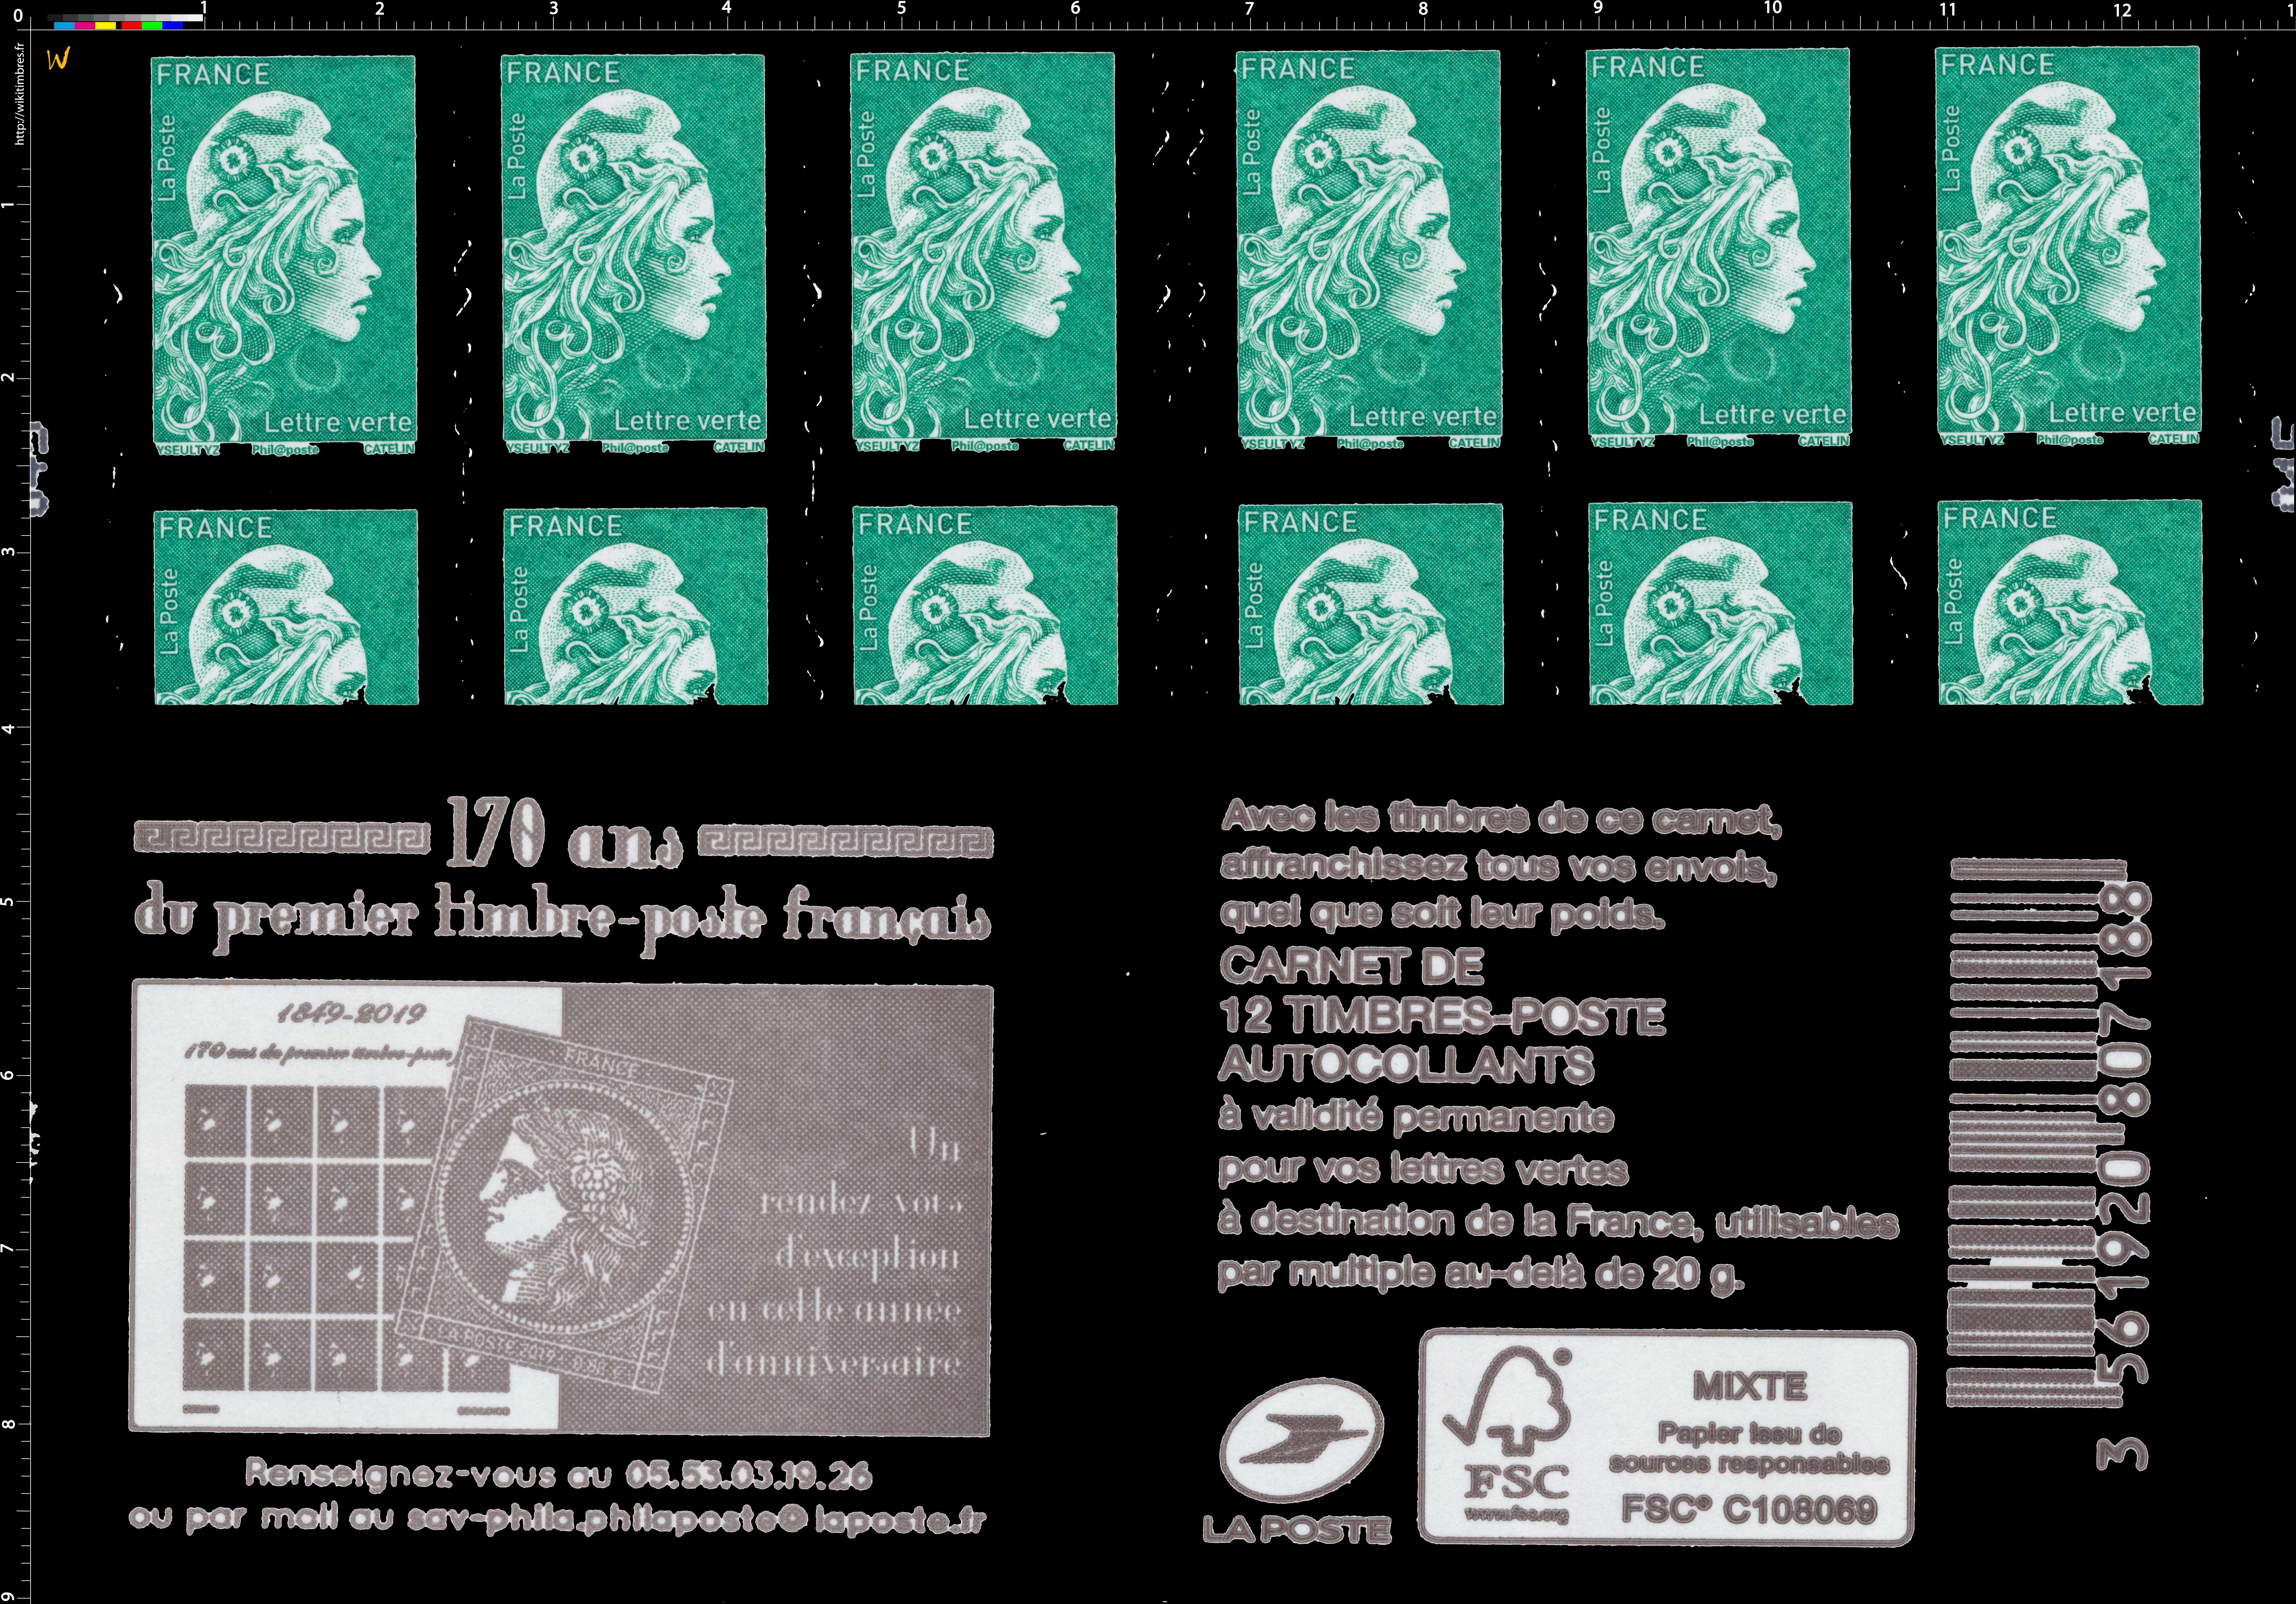 2019 170 ans du premier timbre-poste française - La Cérès noire